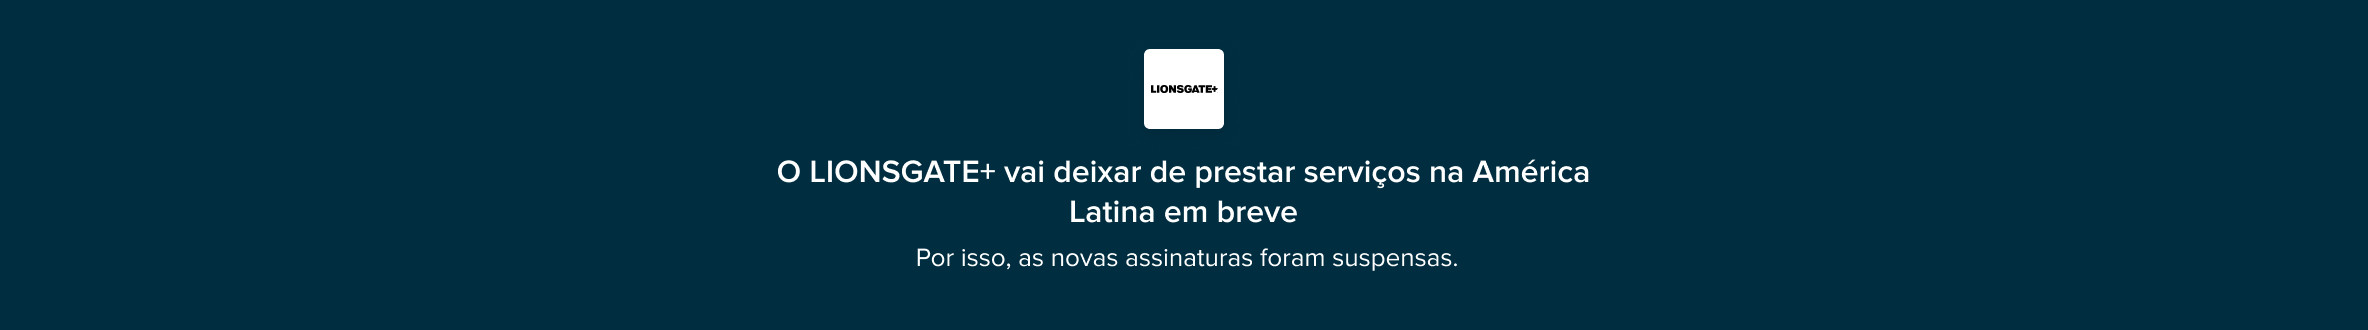 O LIONSGATE+ vai deixar de prestar serviços na América Latina em breve.  Por isso, as novas assinaturas foram suspensas.